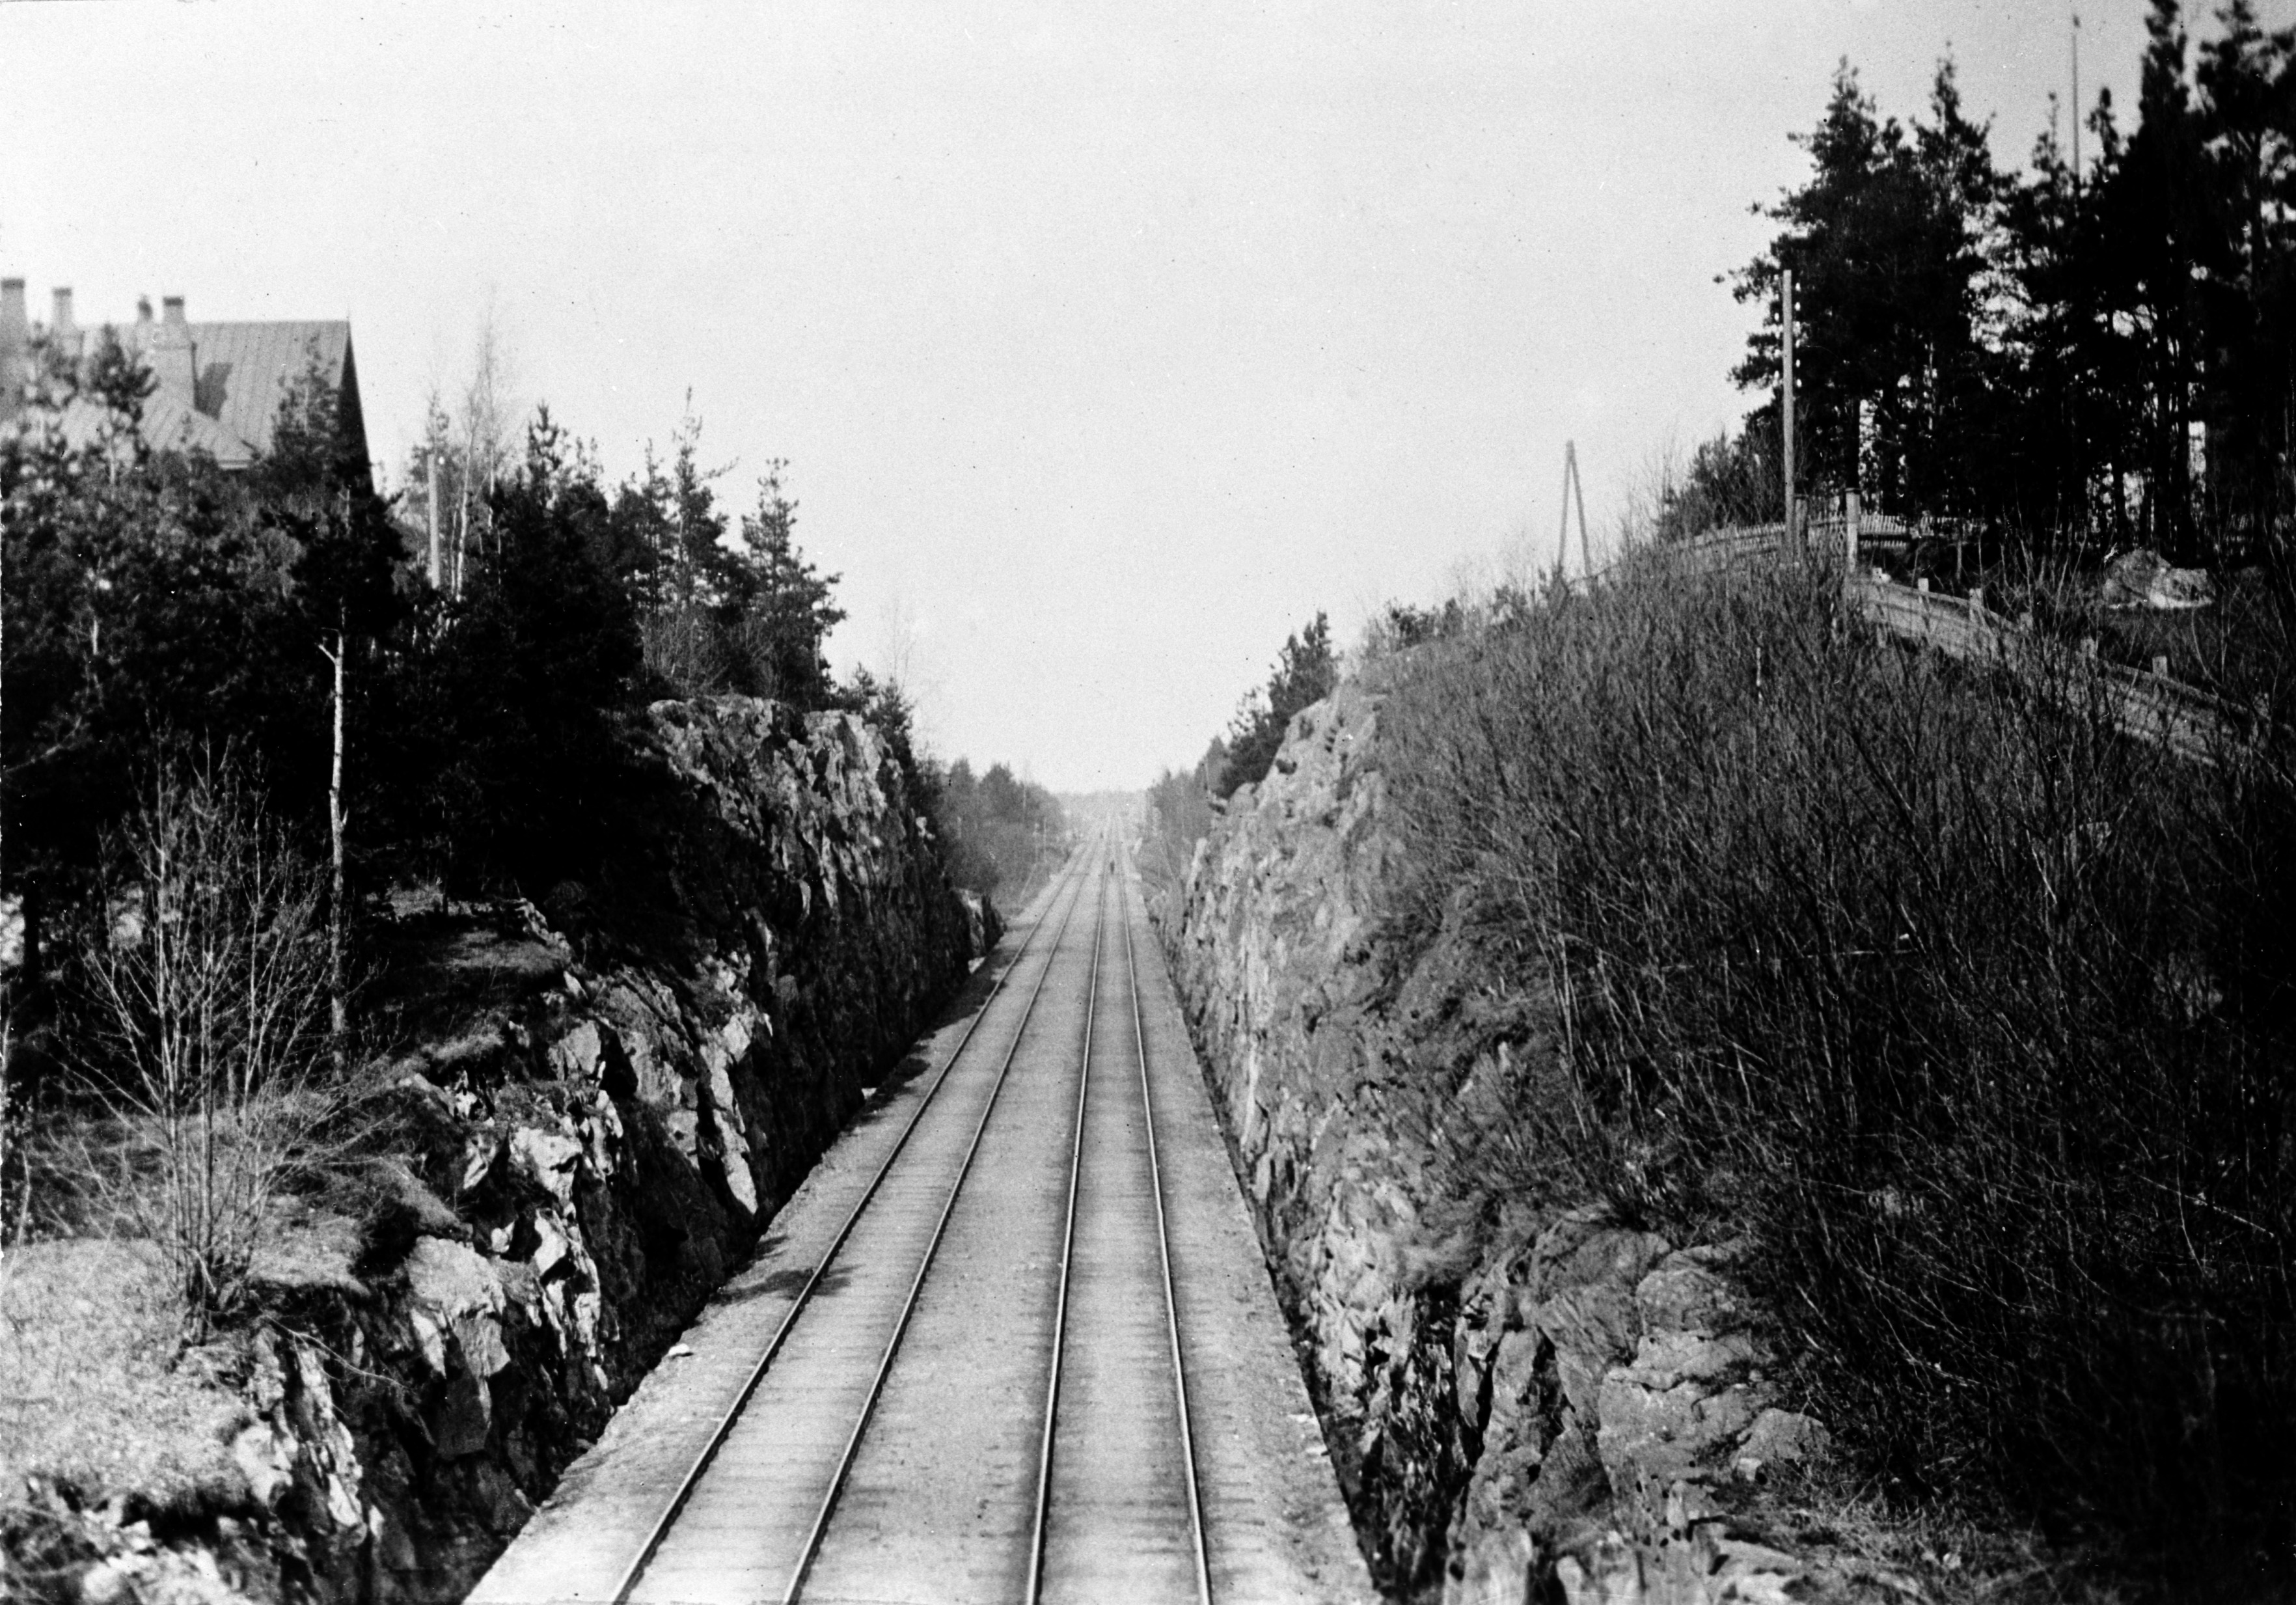 Rautatietä reunustavat louhitut kallioseinät mahdollisesti Linnunlaulussa.